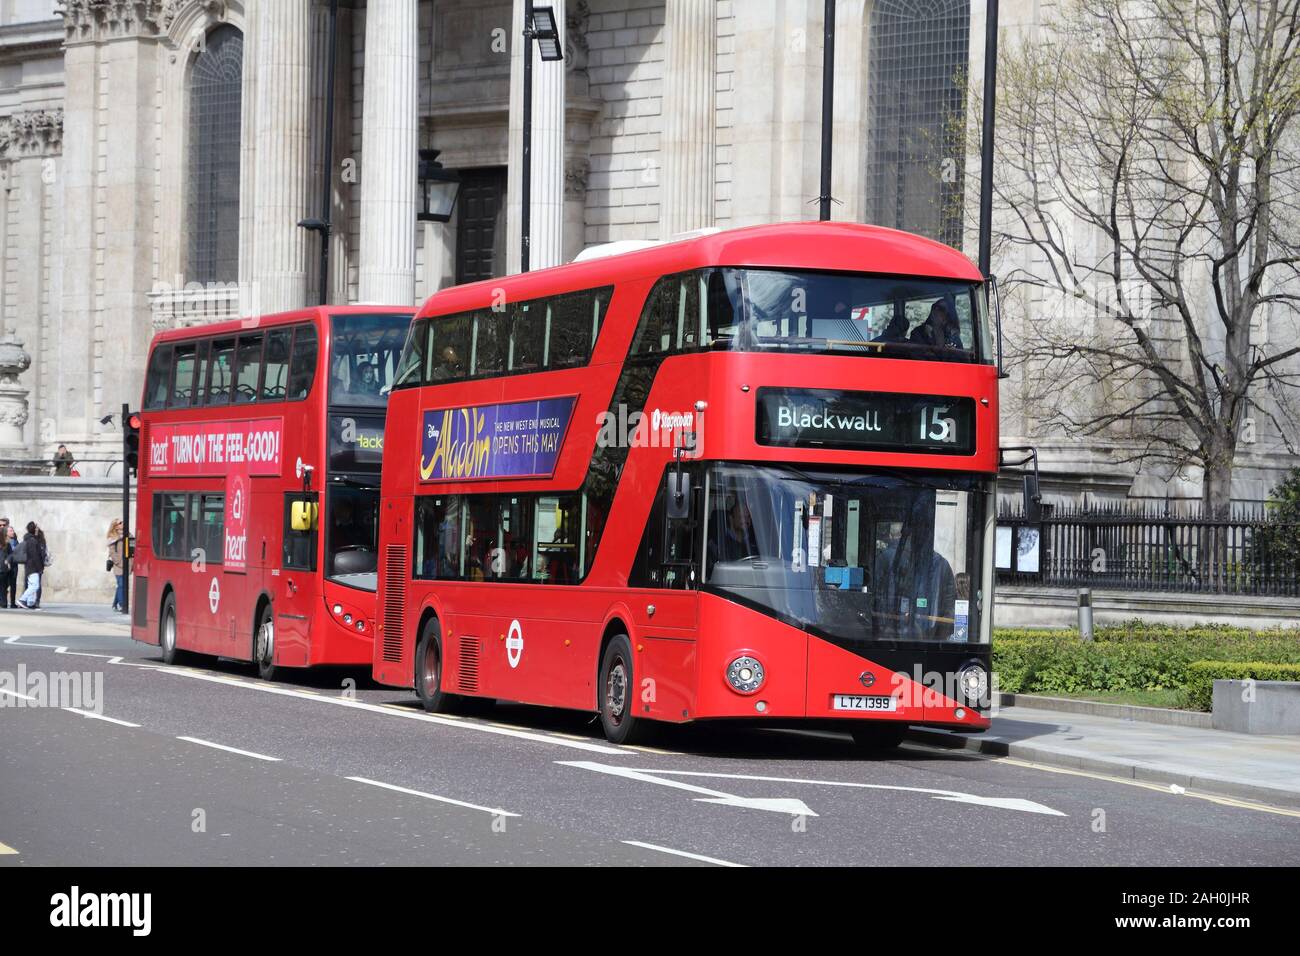 LONDON, Regno Unito - 23 Aprile 2016: la gente ride autobus della città di Londra, Regno Unito. Trasporto per Londra (TFL) opera 8.000 autobus su 673 rotte. Foto Stock